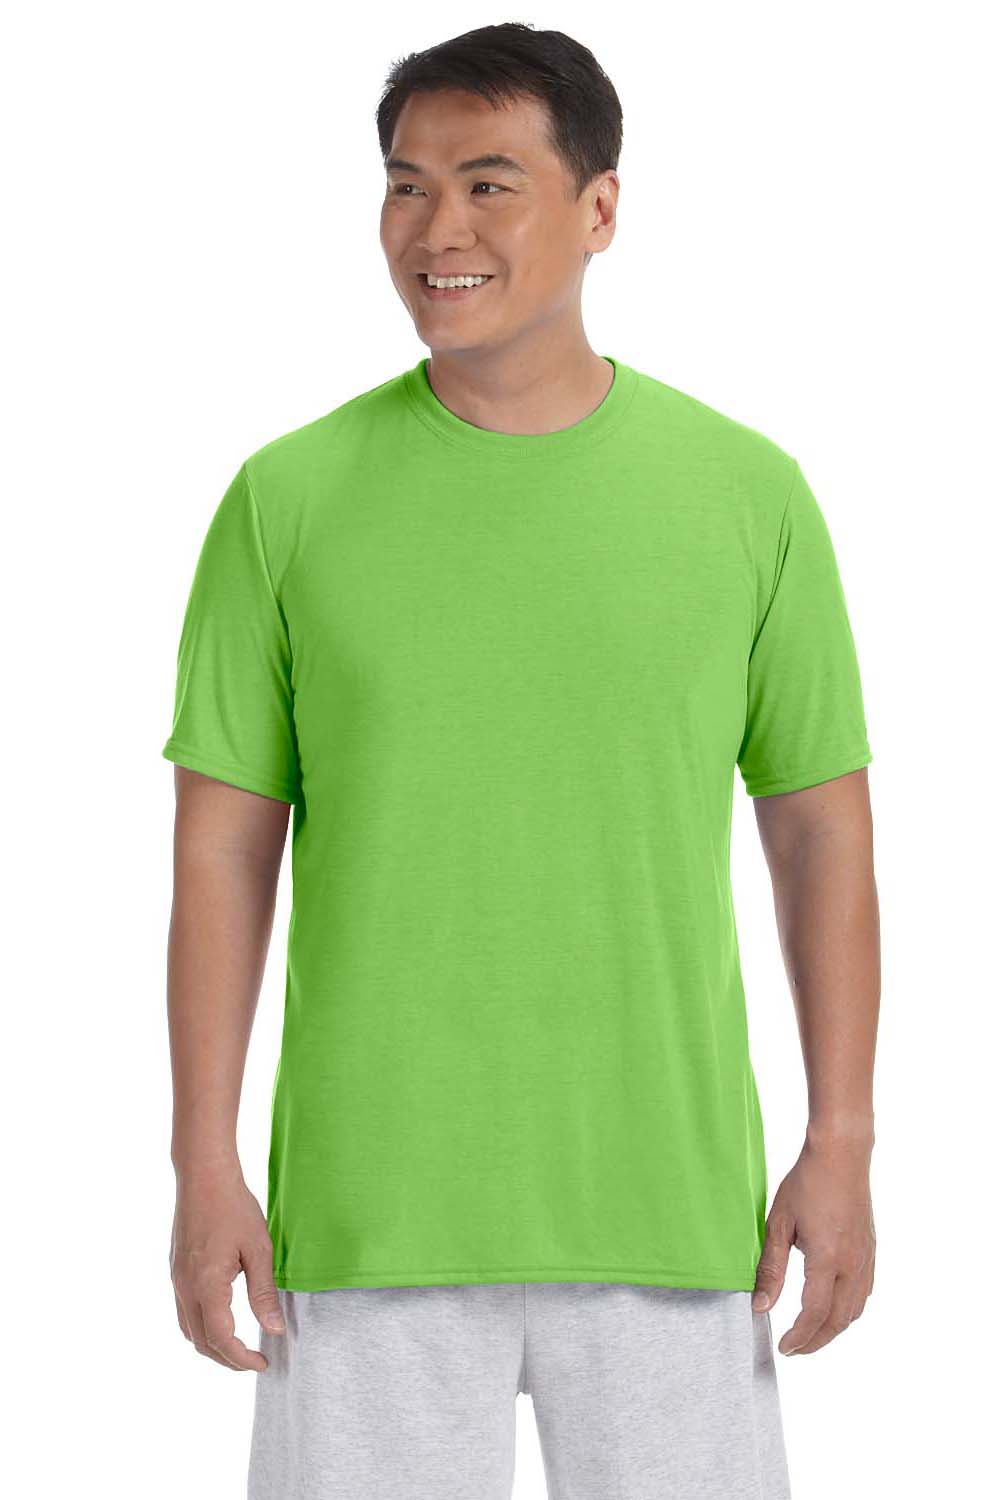 Gildan G420 Mens Performance Jersey Moisture Wicking Short Sleeve Crewneck T-Shirt Lime Green Front